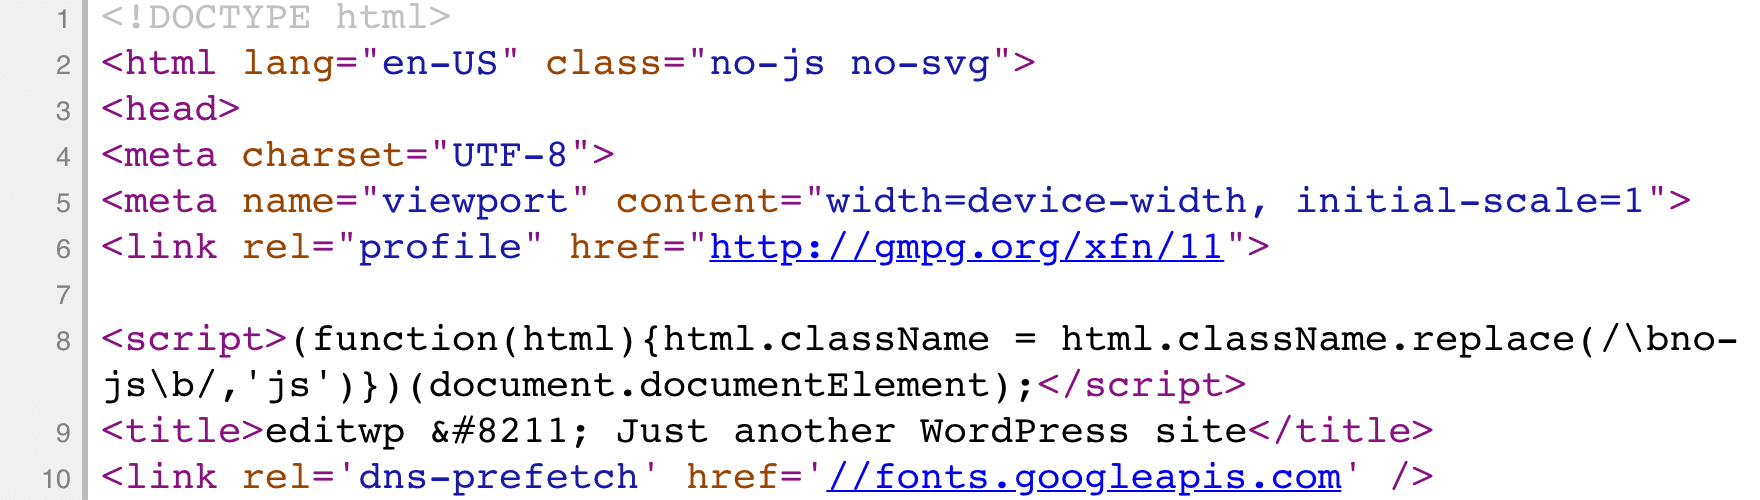 Código HTML não minificado